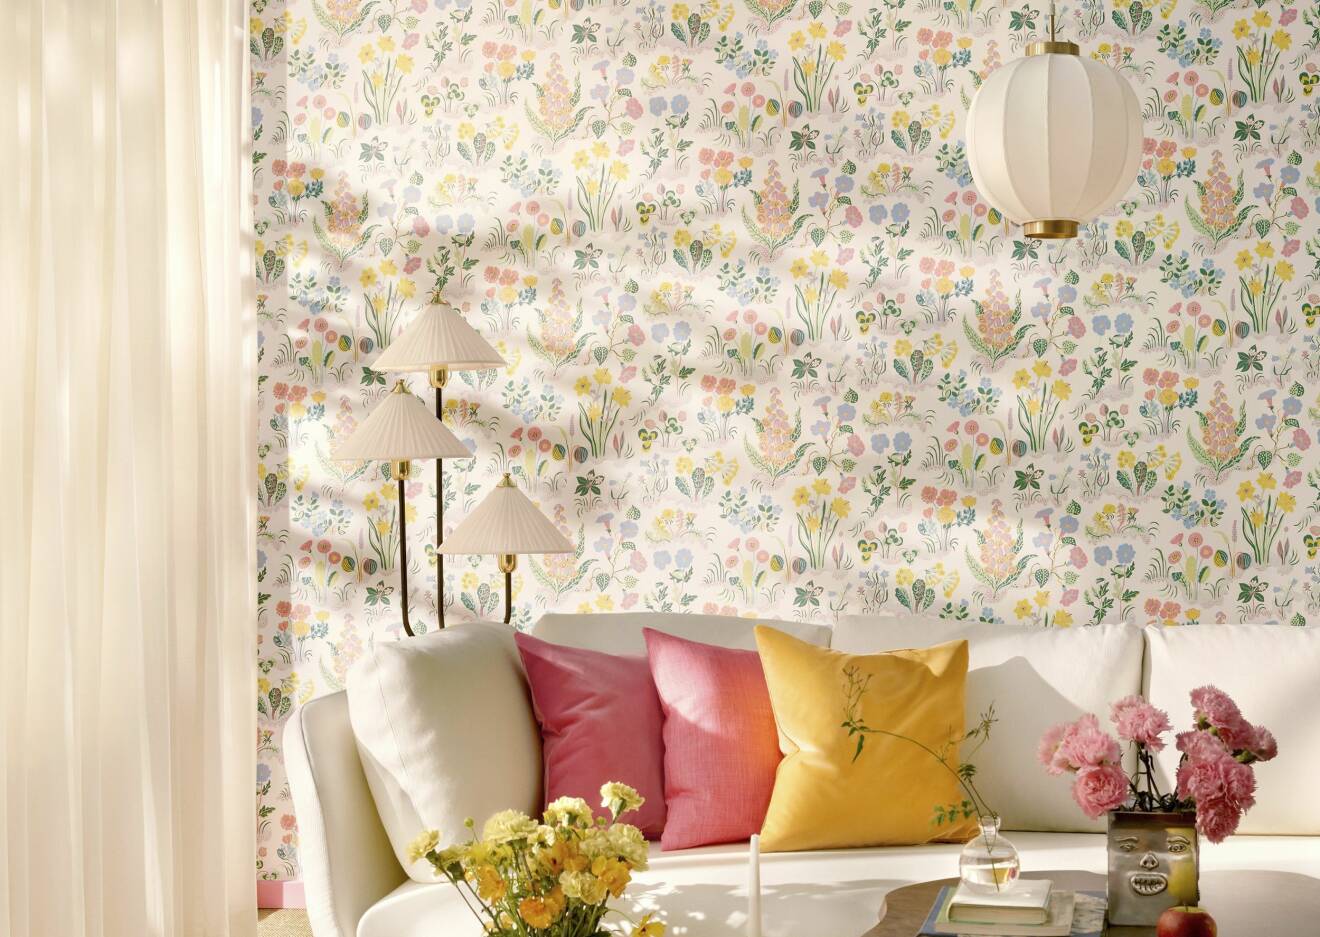 Ljus atpet med mönster i pastellfärger, vit soffa med två rosa kuddar och en gul.